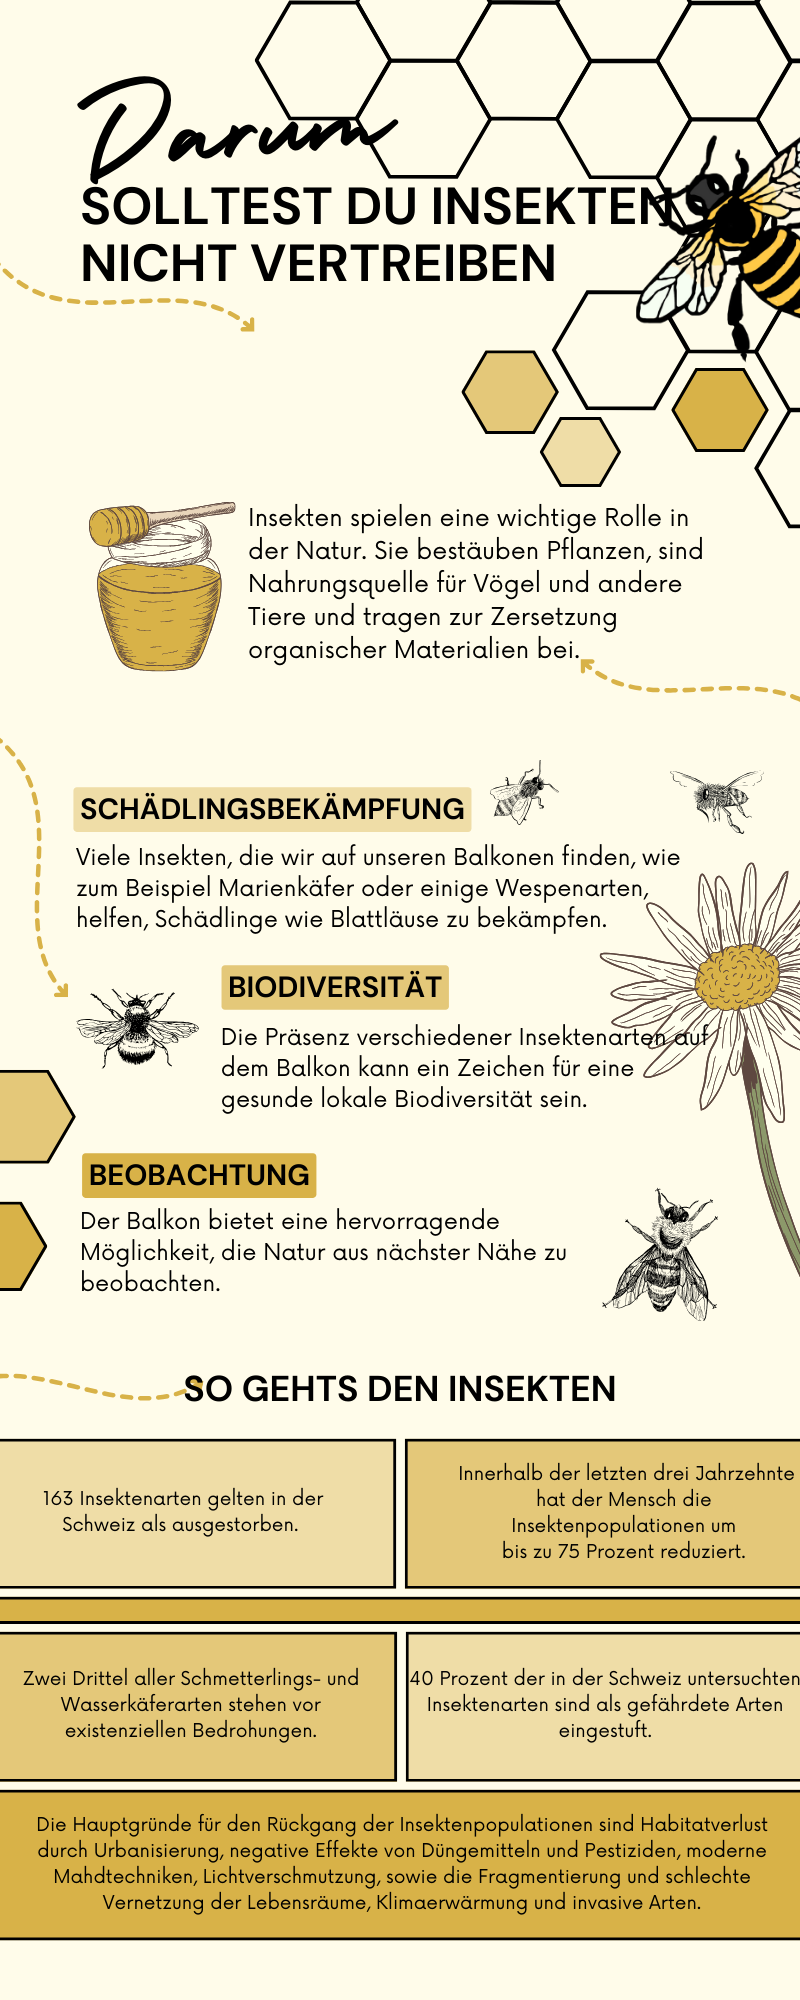 Die Infografik erklärt, warum man Bienen nicht vertreiben sollte